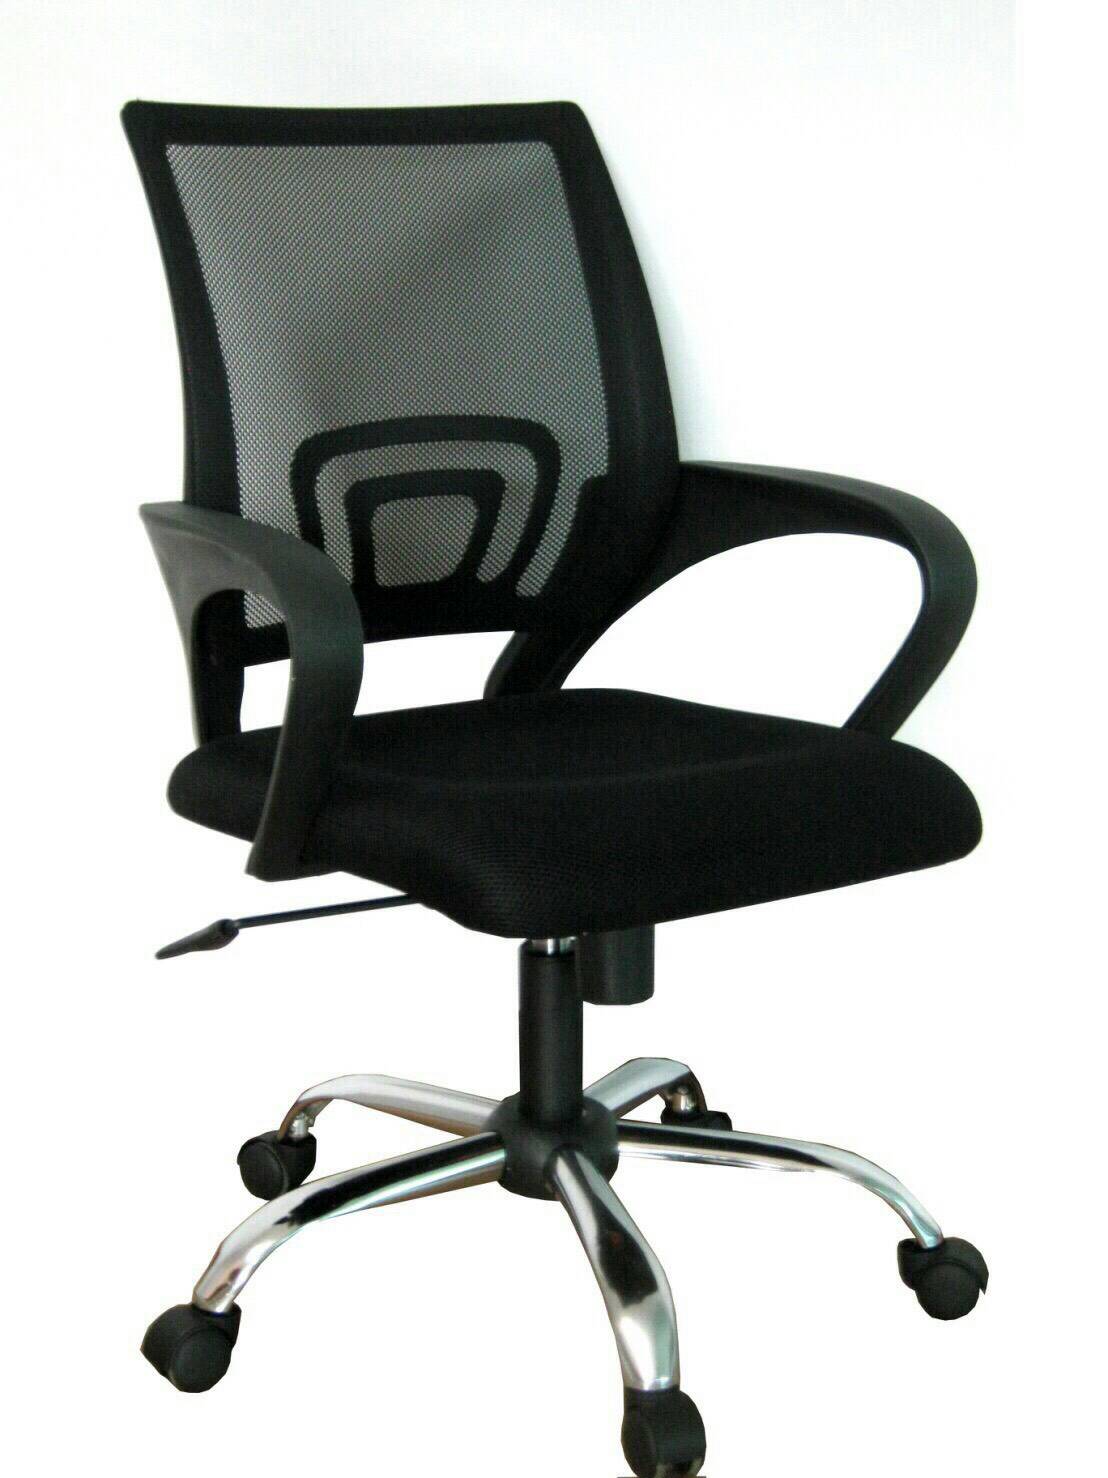 เก้าอี้สำนักงาน,เก้าอี้ผู้บริหาร,เก้าอี้ประชุม ราคาถูก 093-1241769 ,  080-6986880